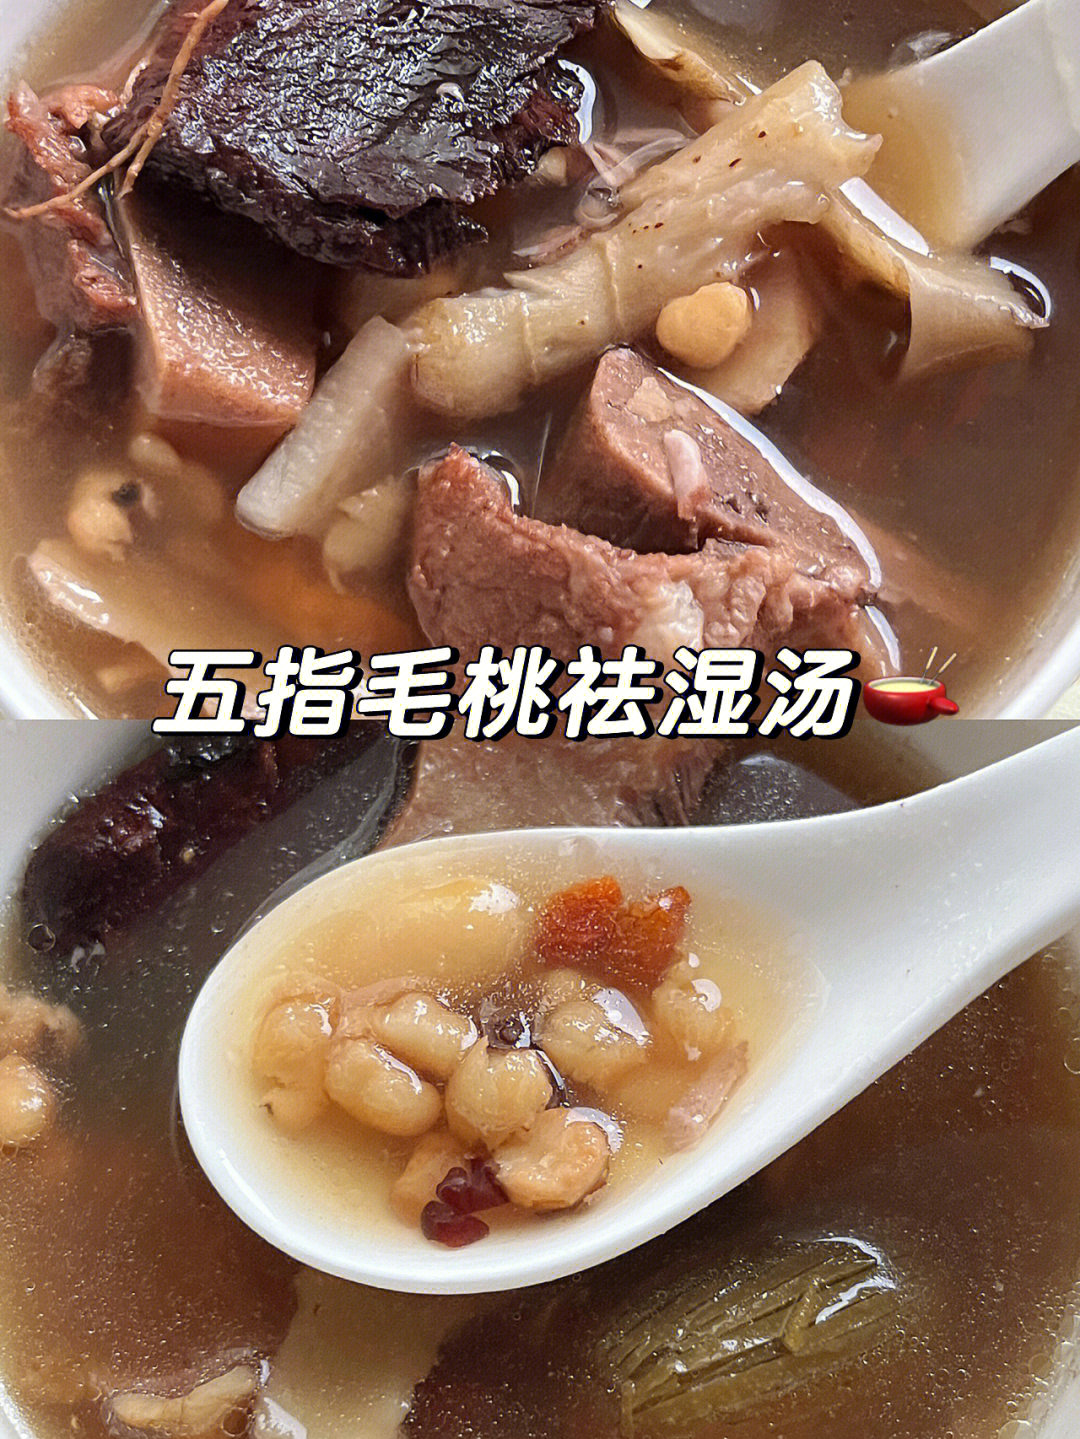 广东五指毛桃煲汤法图片